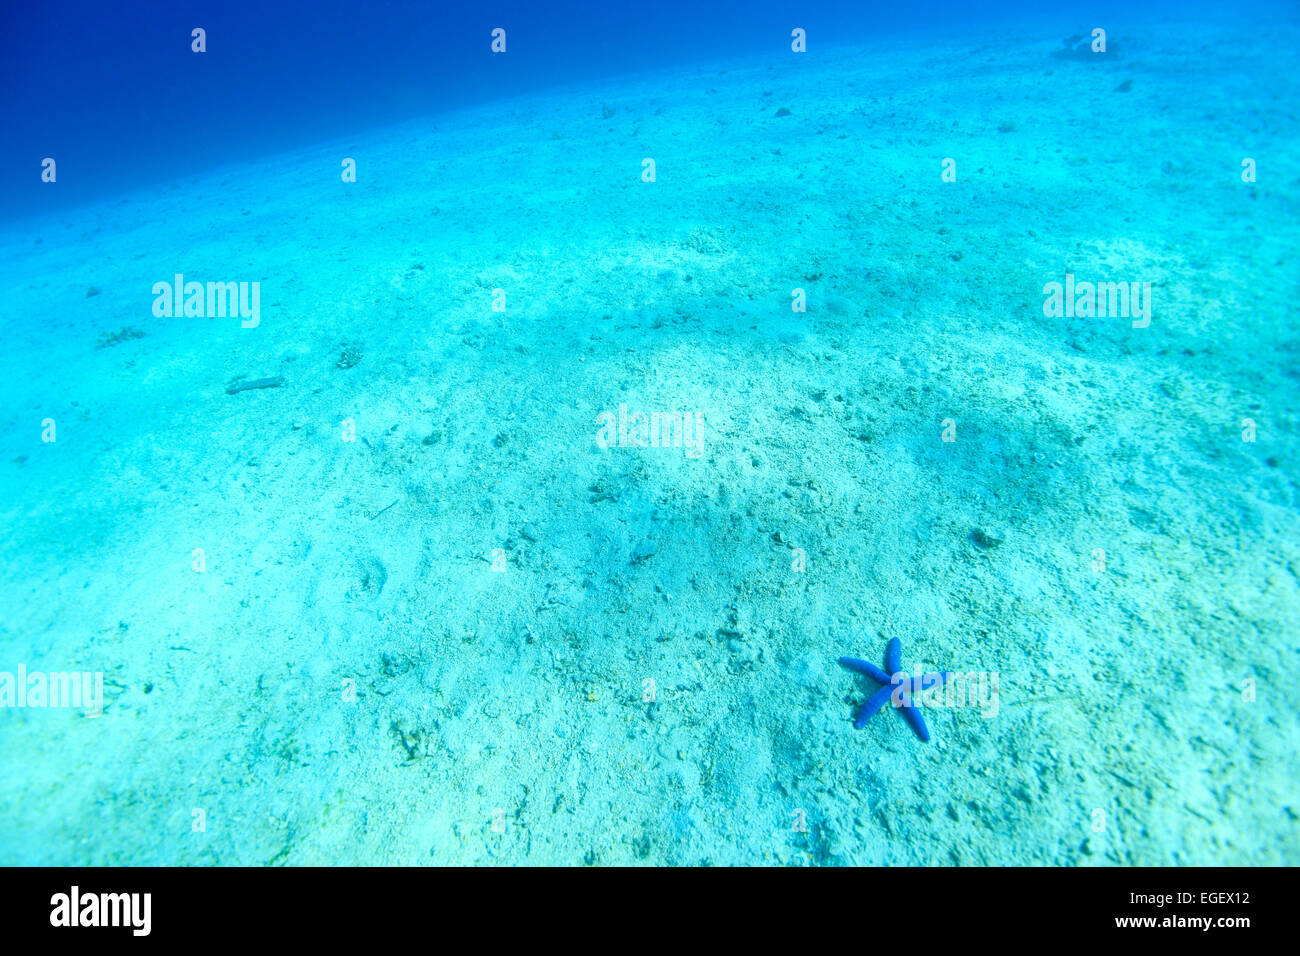 Underwater Life Stock Photo